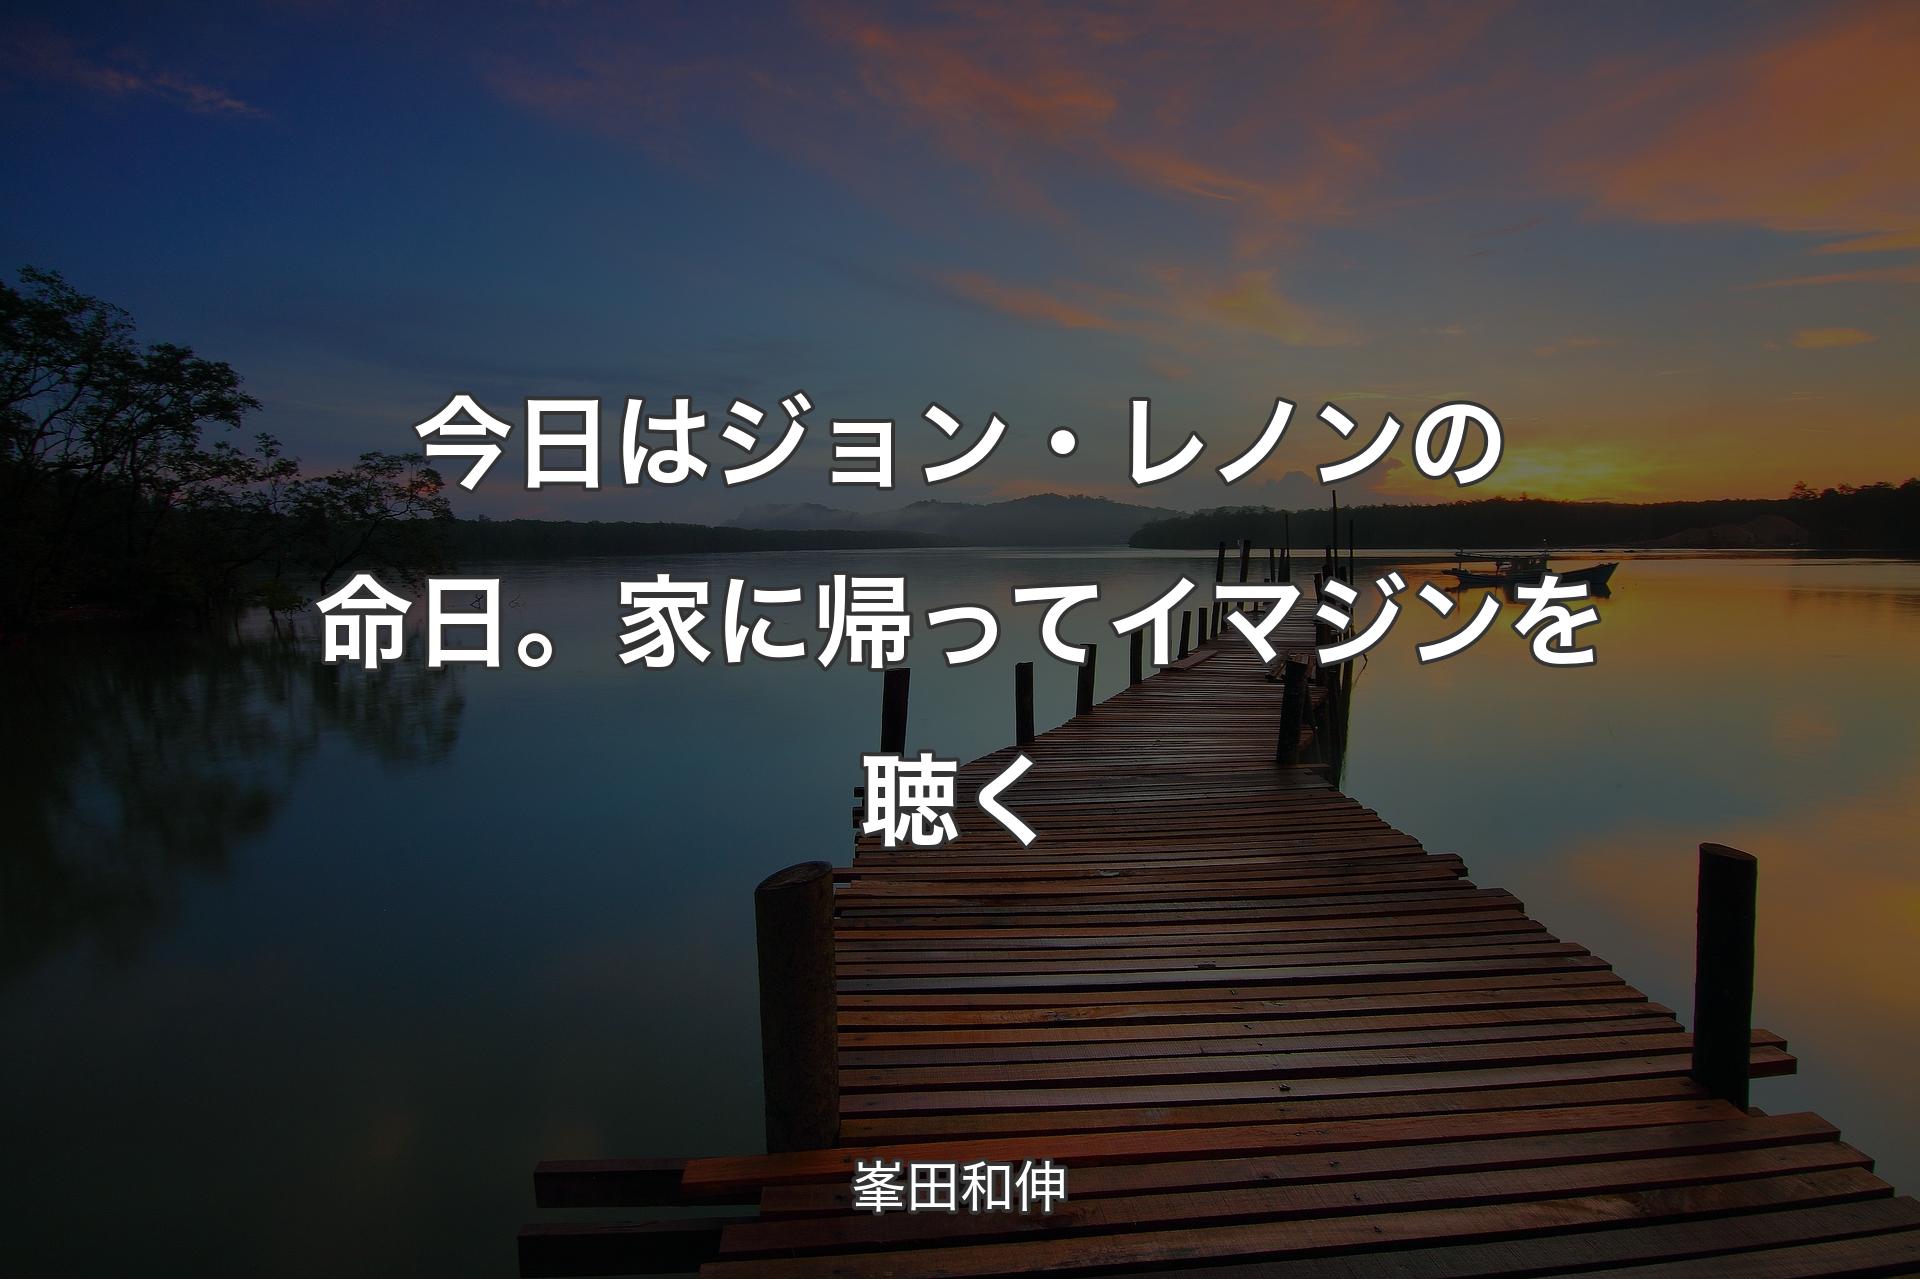 【背景3】今日はジョン・レノンの命日。家に帰ってイマジンを聴く - 峯田和伸